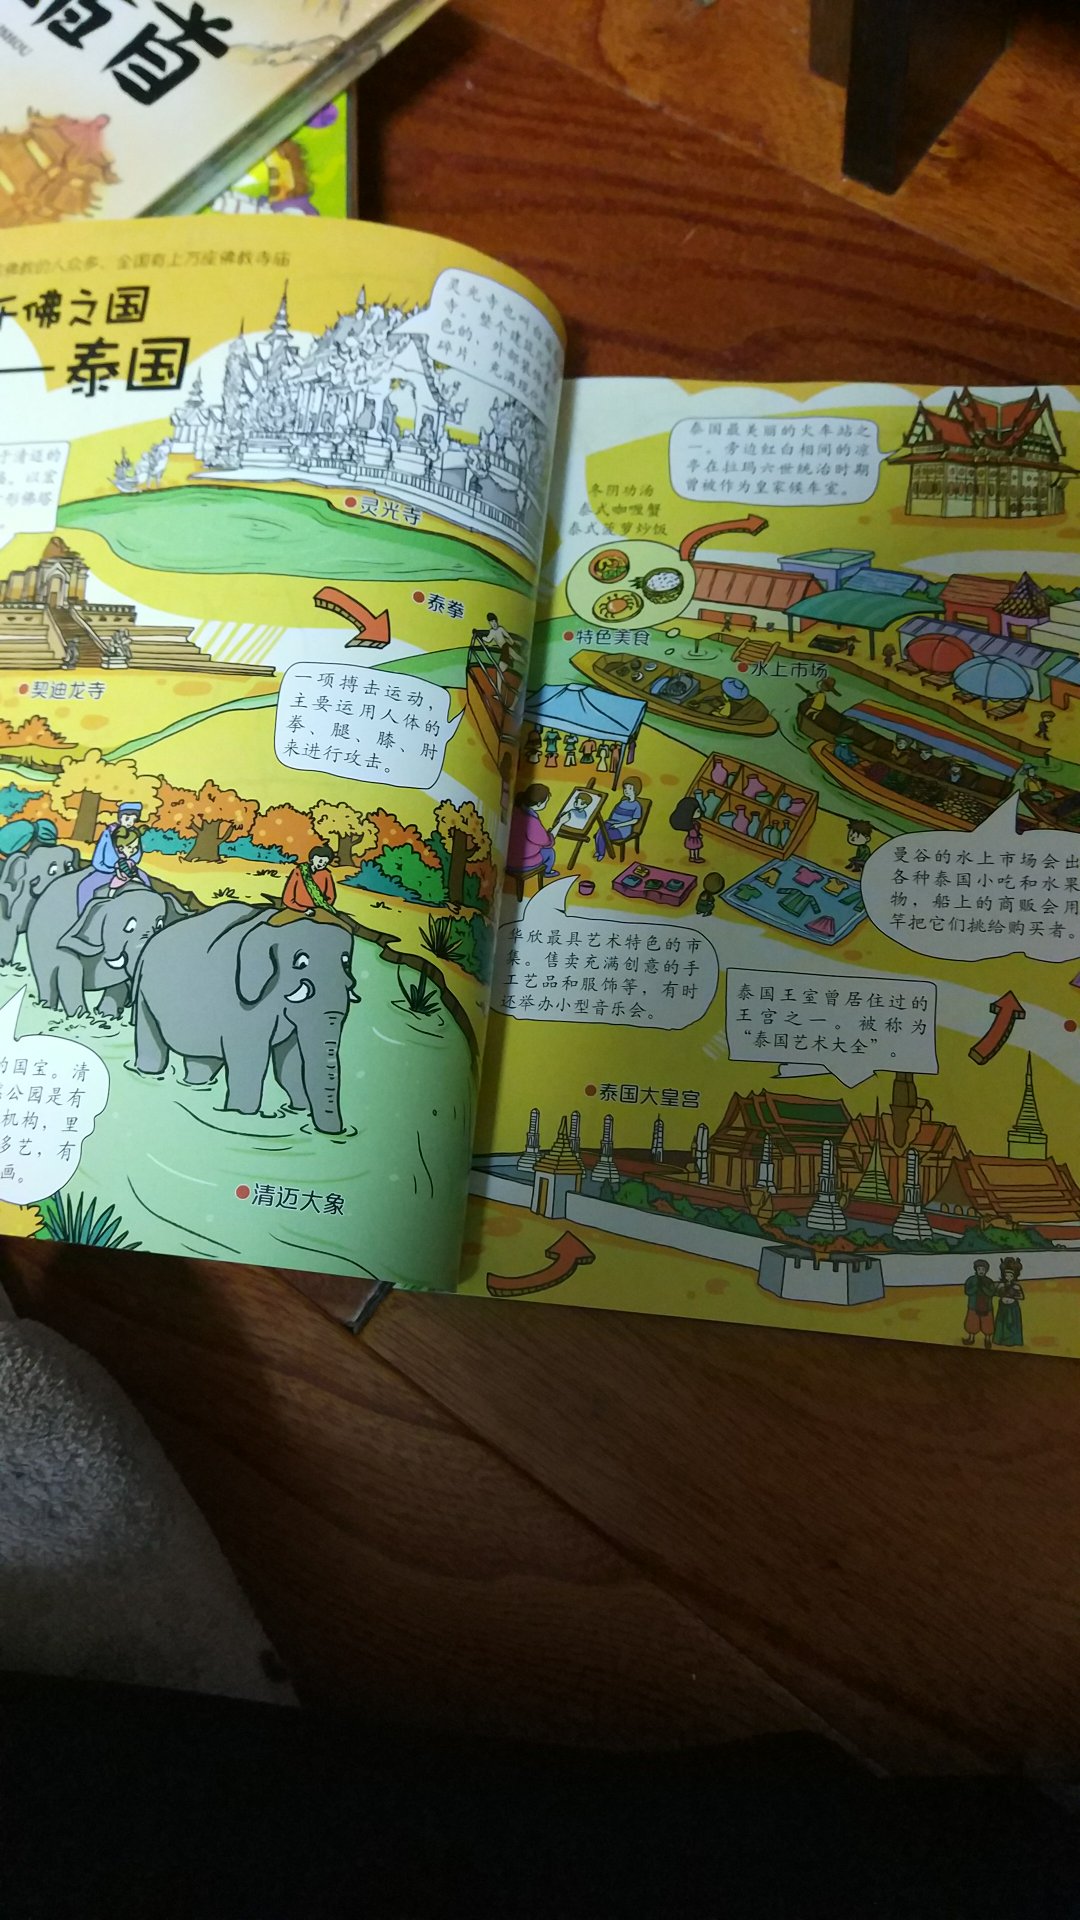 很好玩的一本地理书，里面文字少，图片多。。很容易吸引宝宝的注意力。。很好的一本幼儿启蒙书籍